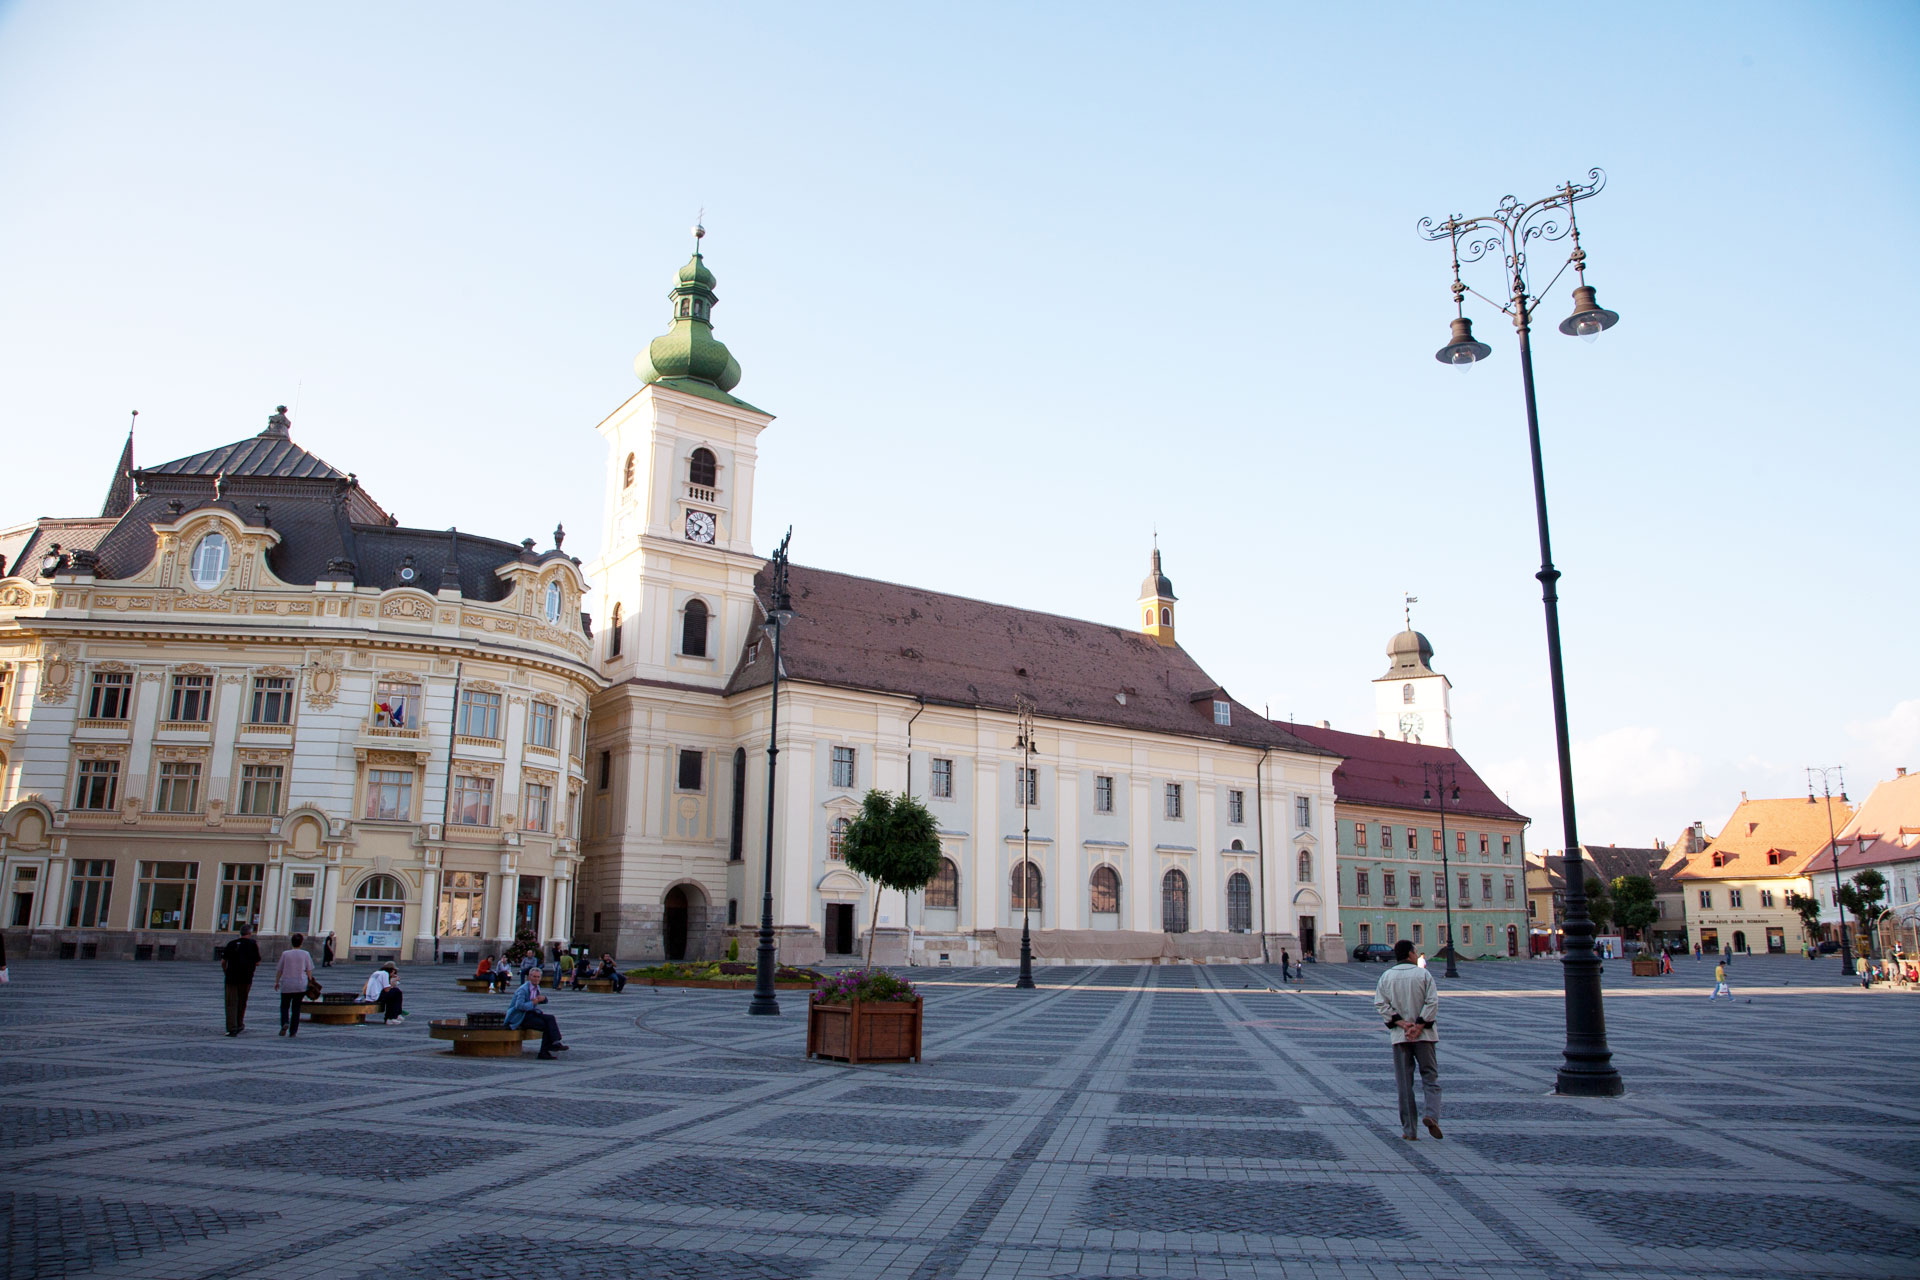 Municipal Hall and Roman-Catholic Cathedral on Piata Mare (Large Square), Sibiu, Romania